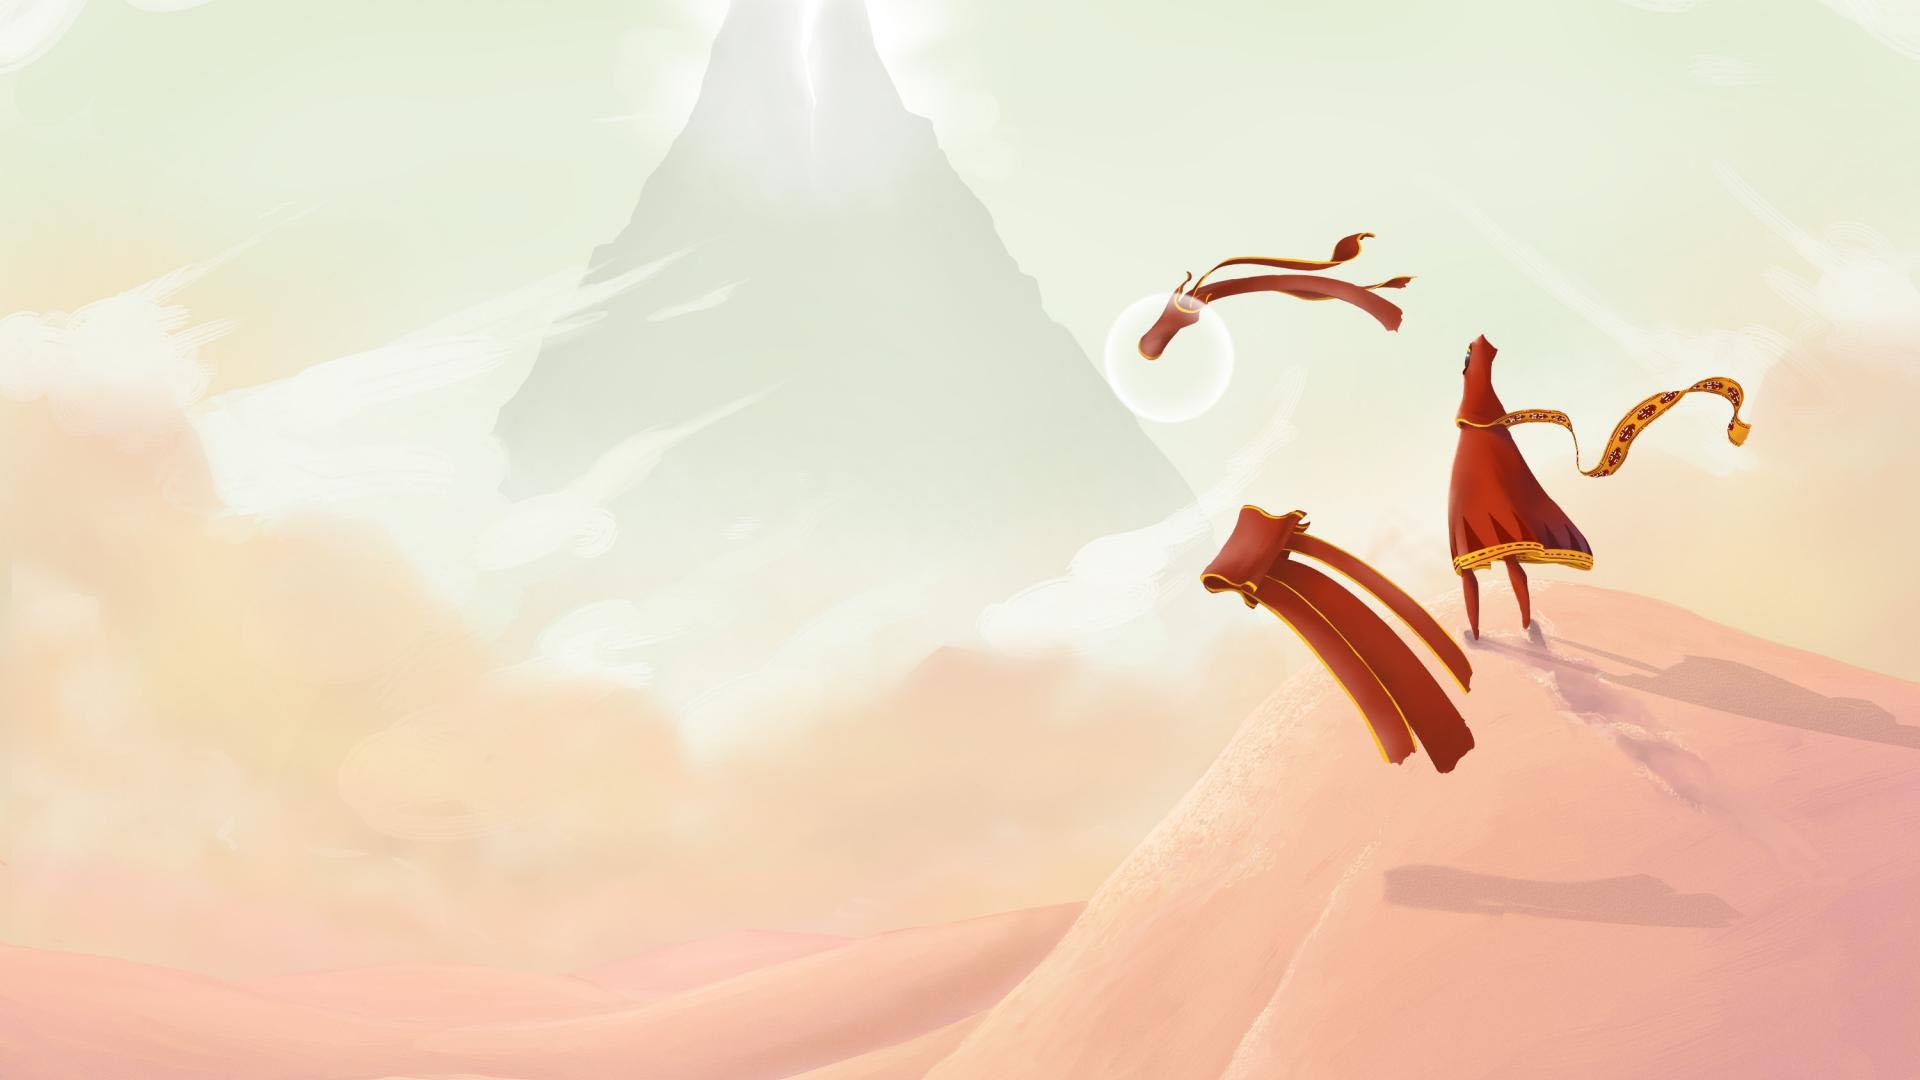 شخصیت بازی Journey در حال نگاه کردن کوه